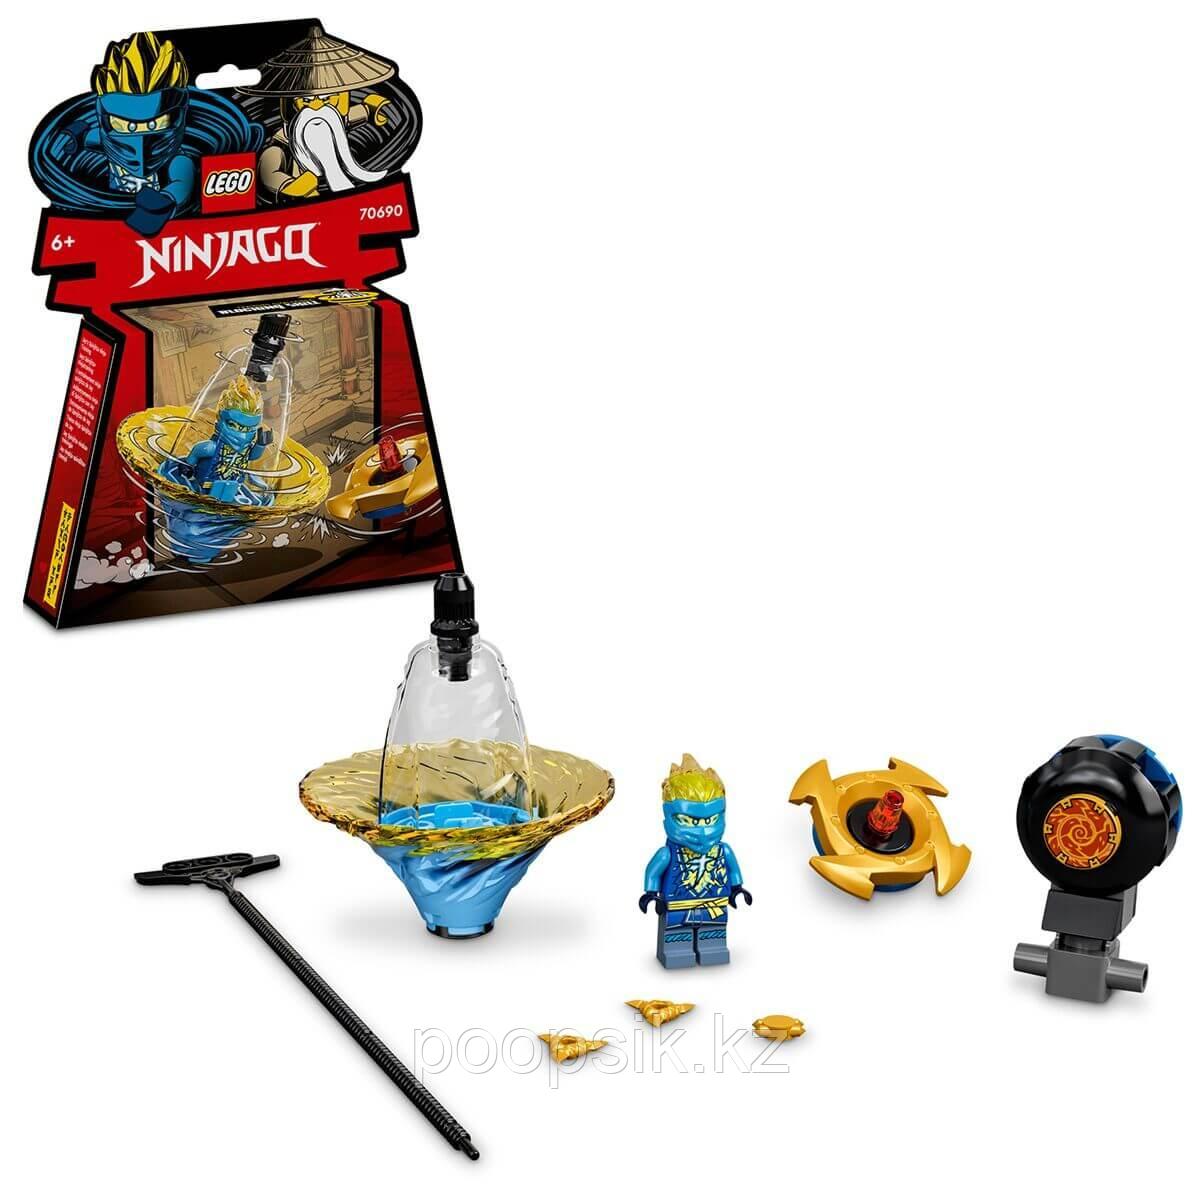 Lego Ninjago Обучение кружитцу ниндзя Джея 70690